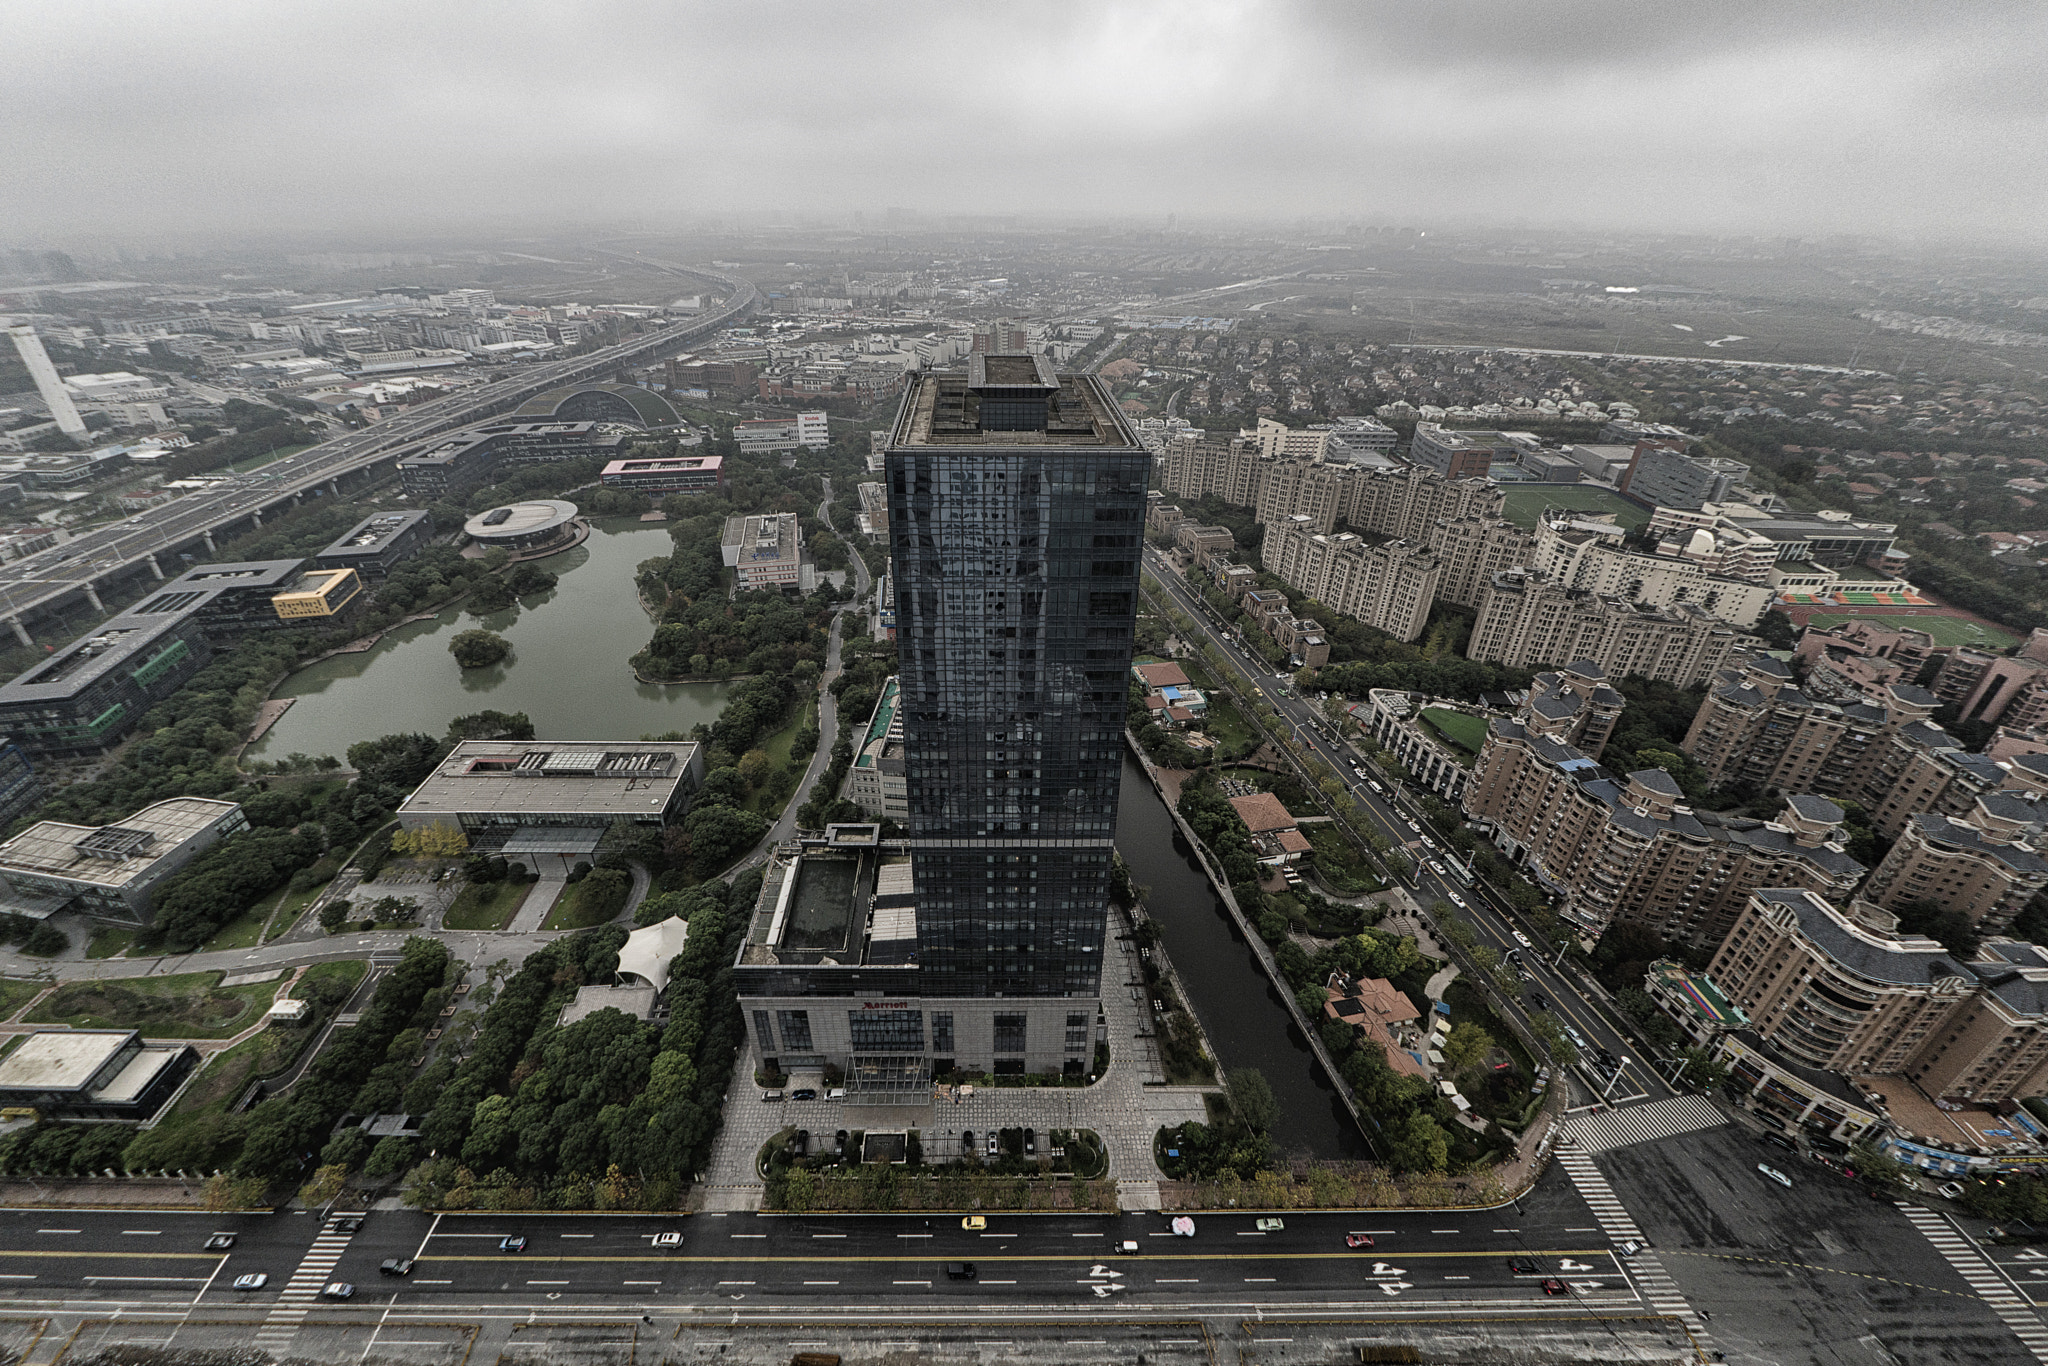 Sony FE 28mm F2 sample photo. Shanghai suburbs photography